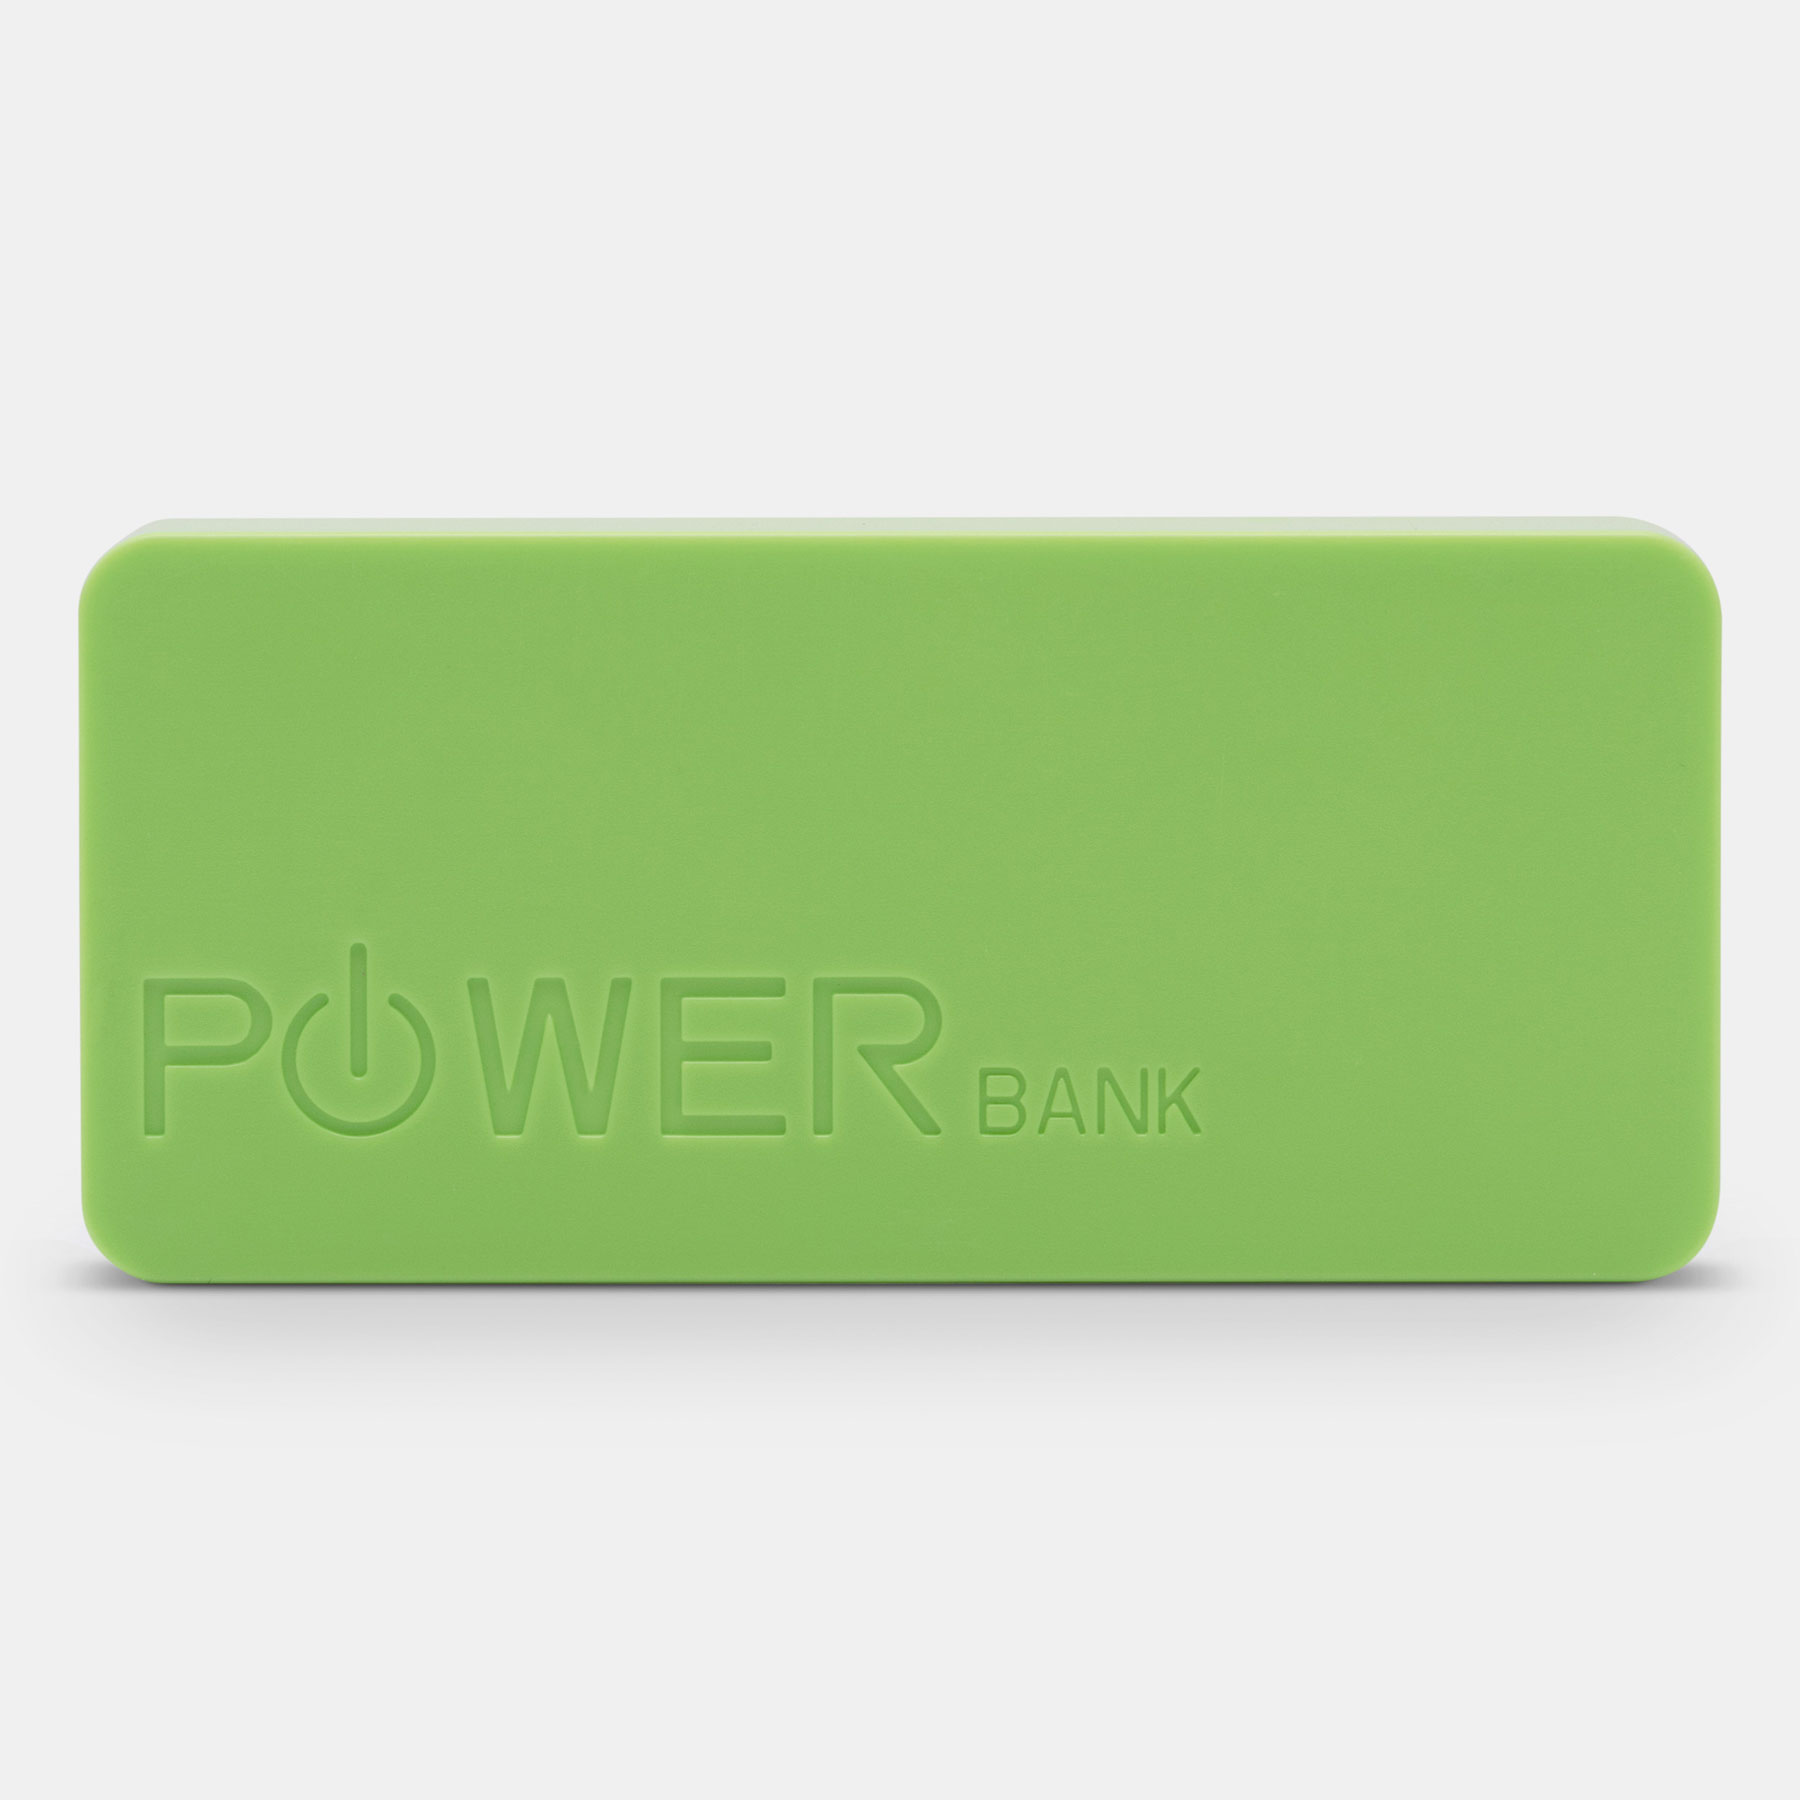 Powerbank TOP ENERGY - foto